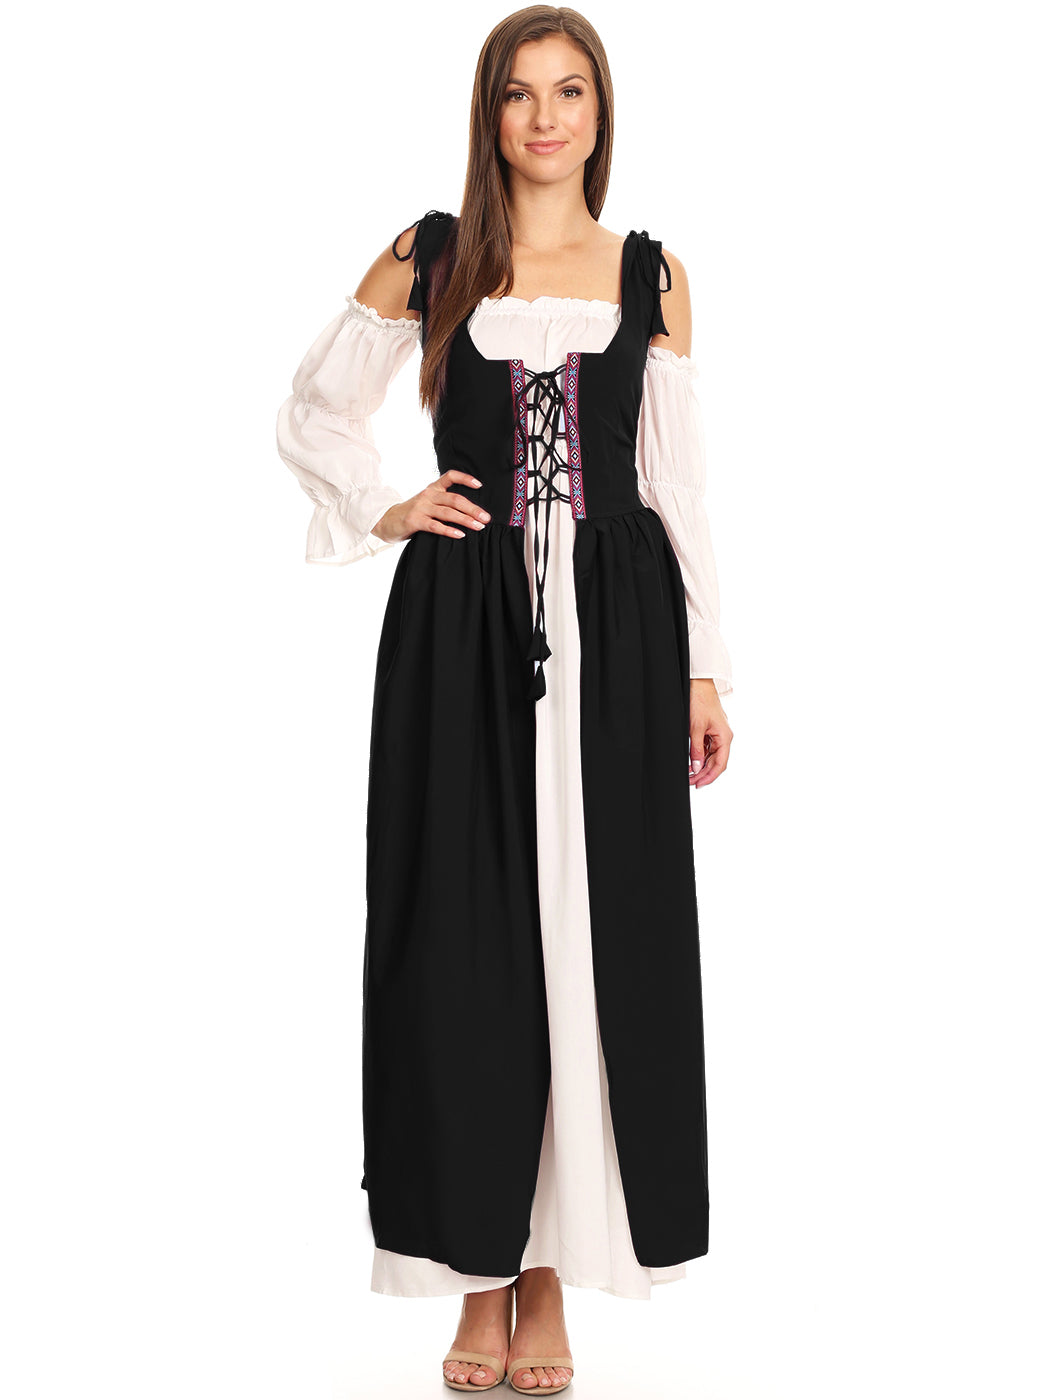 Anna-Kaci Womens Renaissance Overdress Medieval Irish Off Shoulder Dress